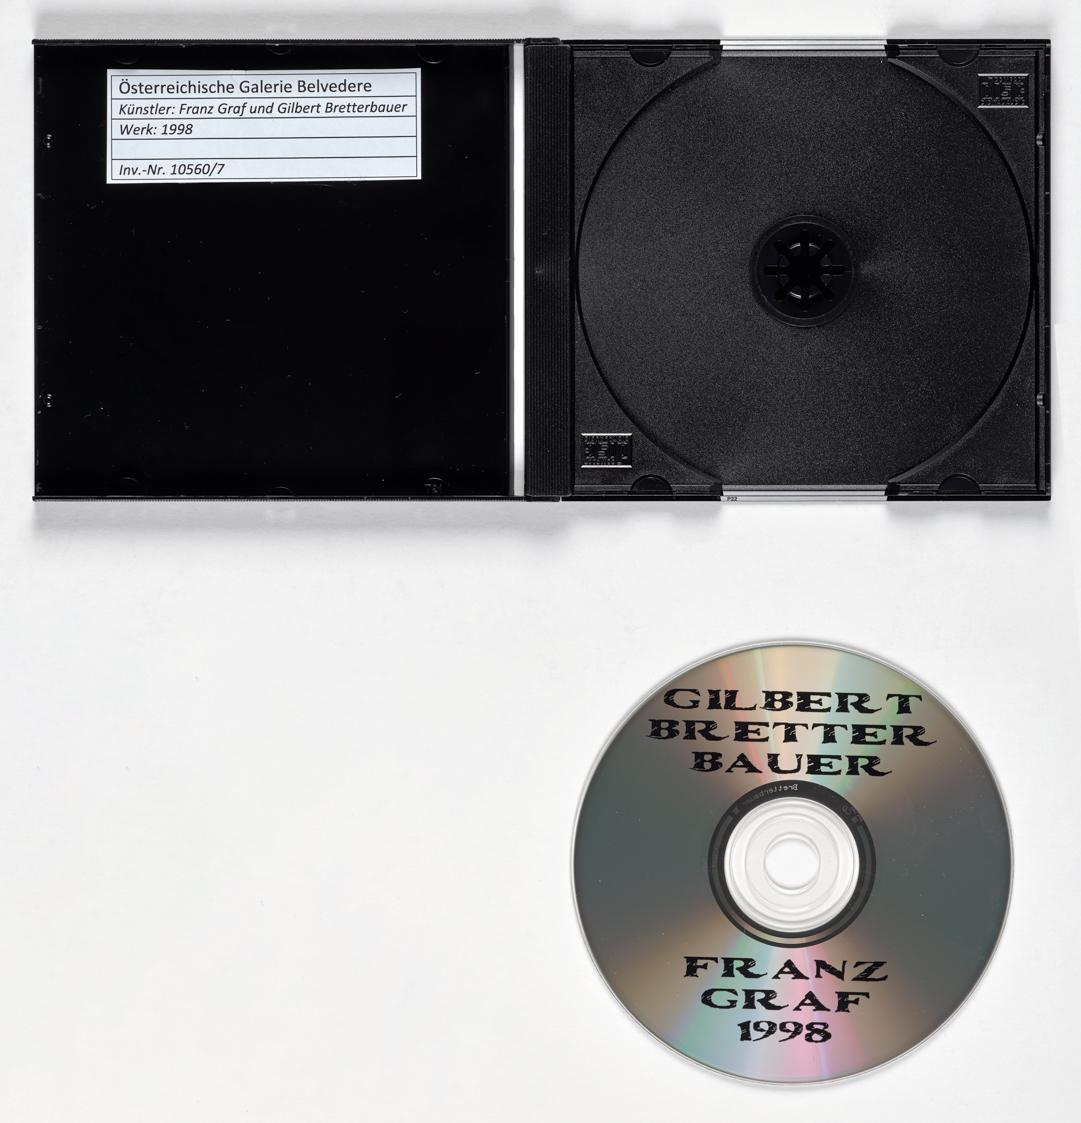 Franz Graf, 1998, 1998, Audio-CD mit15 Tracks, Belvedere, Wien, Inv.-Nr. 10560/7